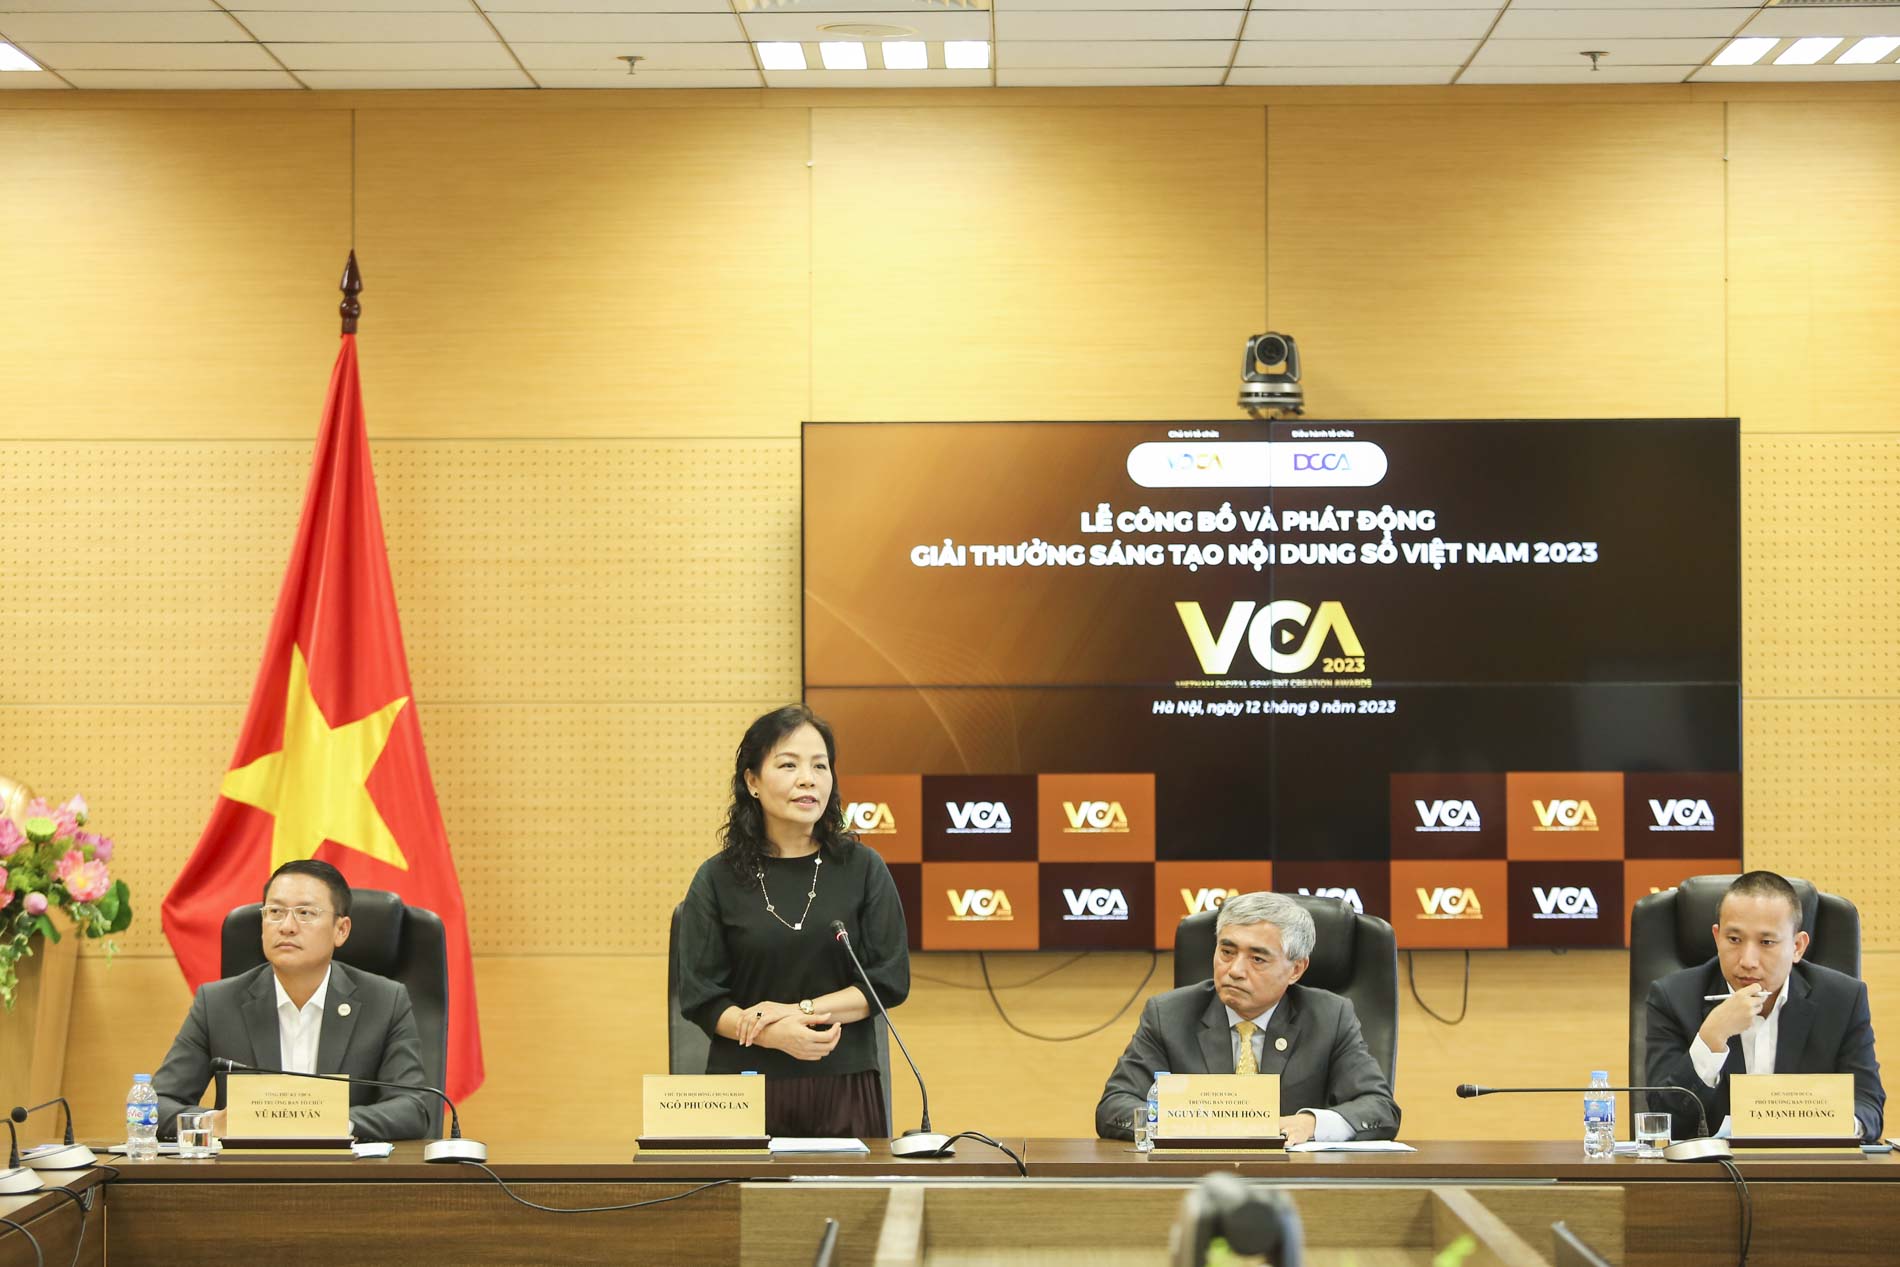 Lần đầu tiên Việt Nam có giải thưởng trong lĩnh vực sáng tạo nội dung số